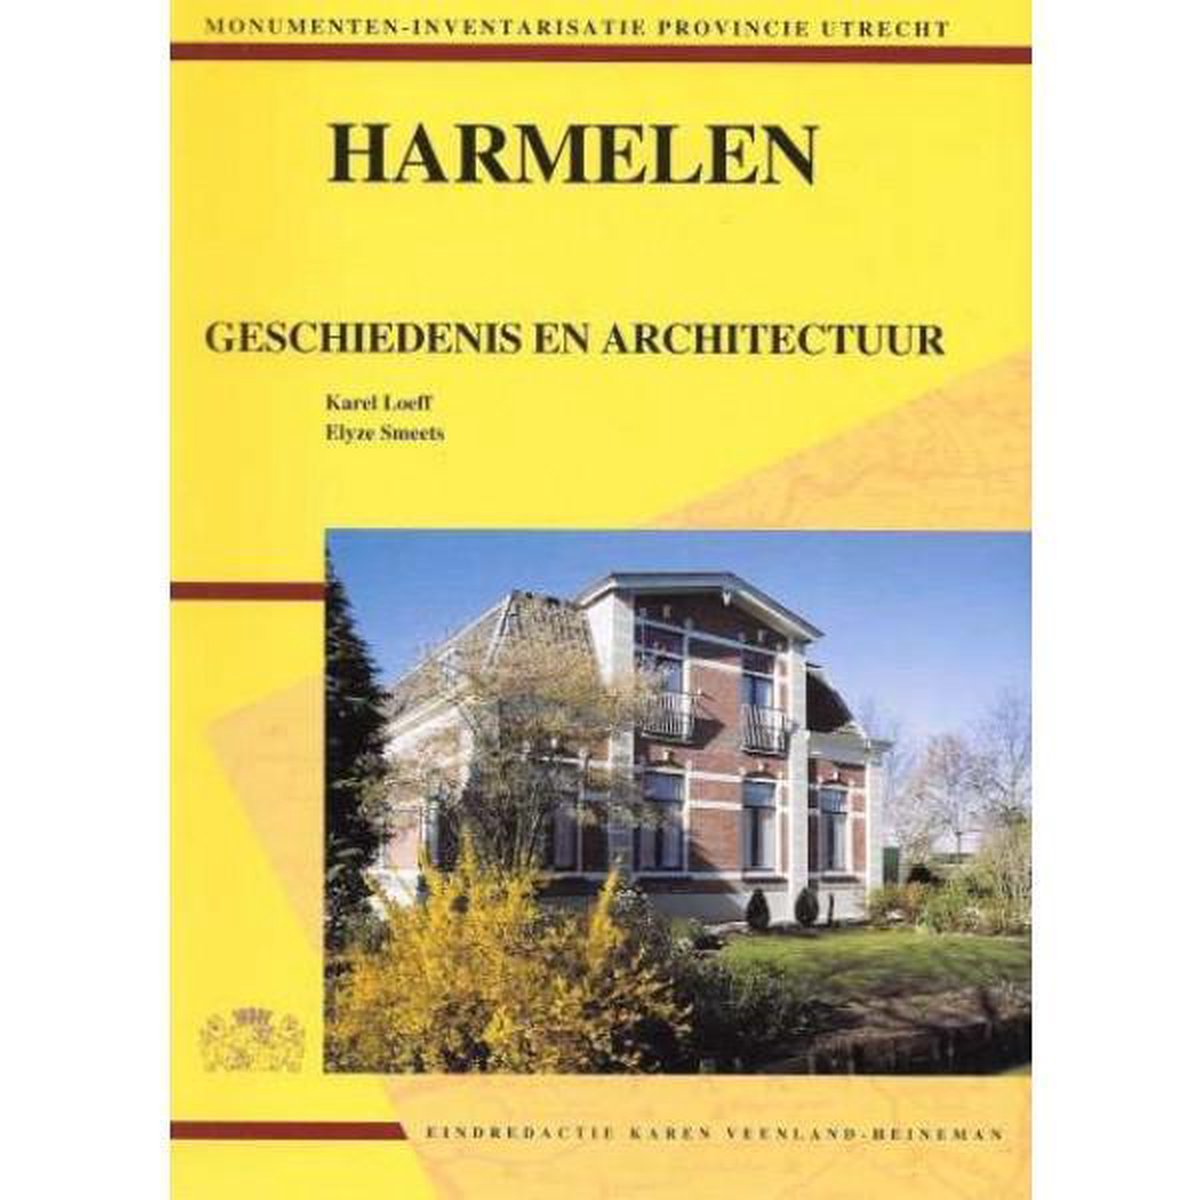 Harmelen geschiedenis en architectuur, Karel Loeff en Elyze Smeets |  9789067202336 |... | bol.com